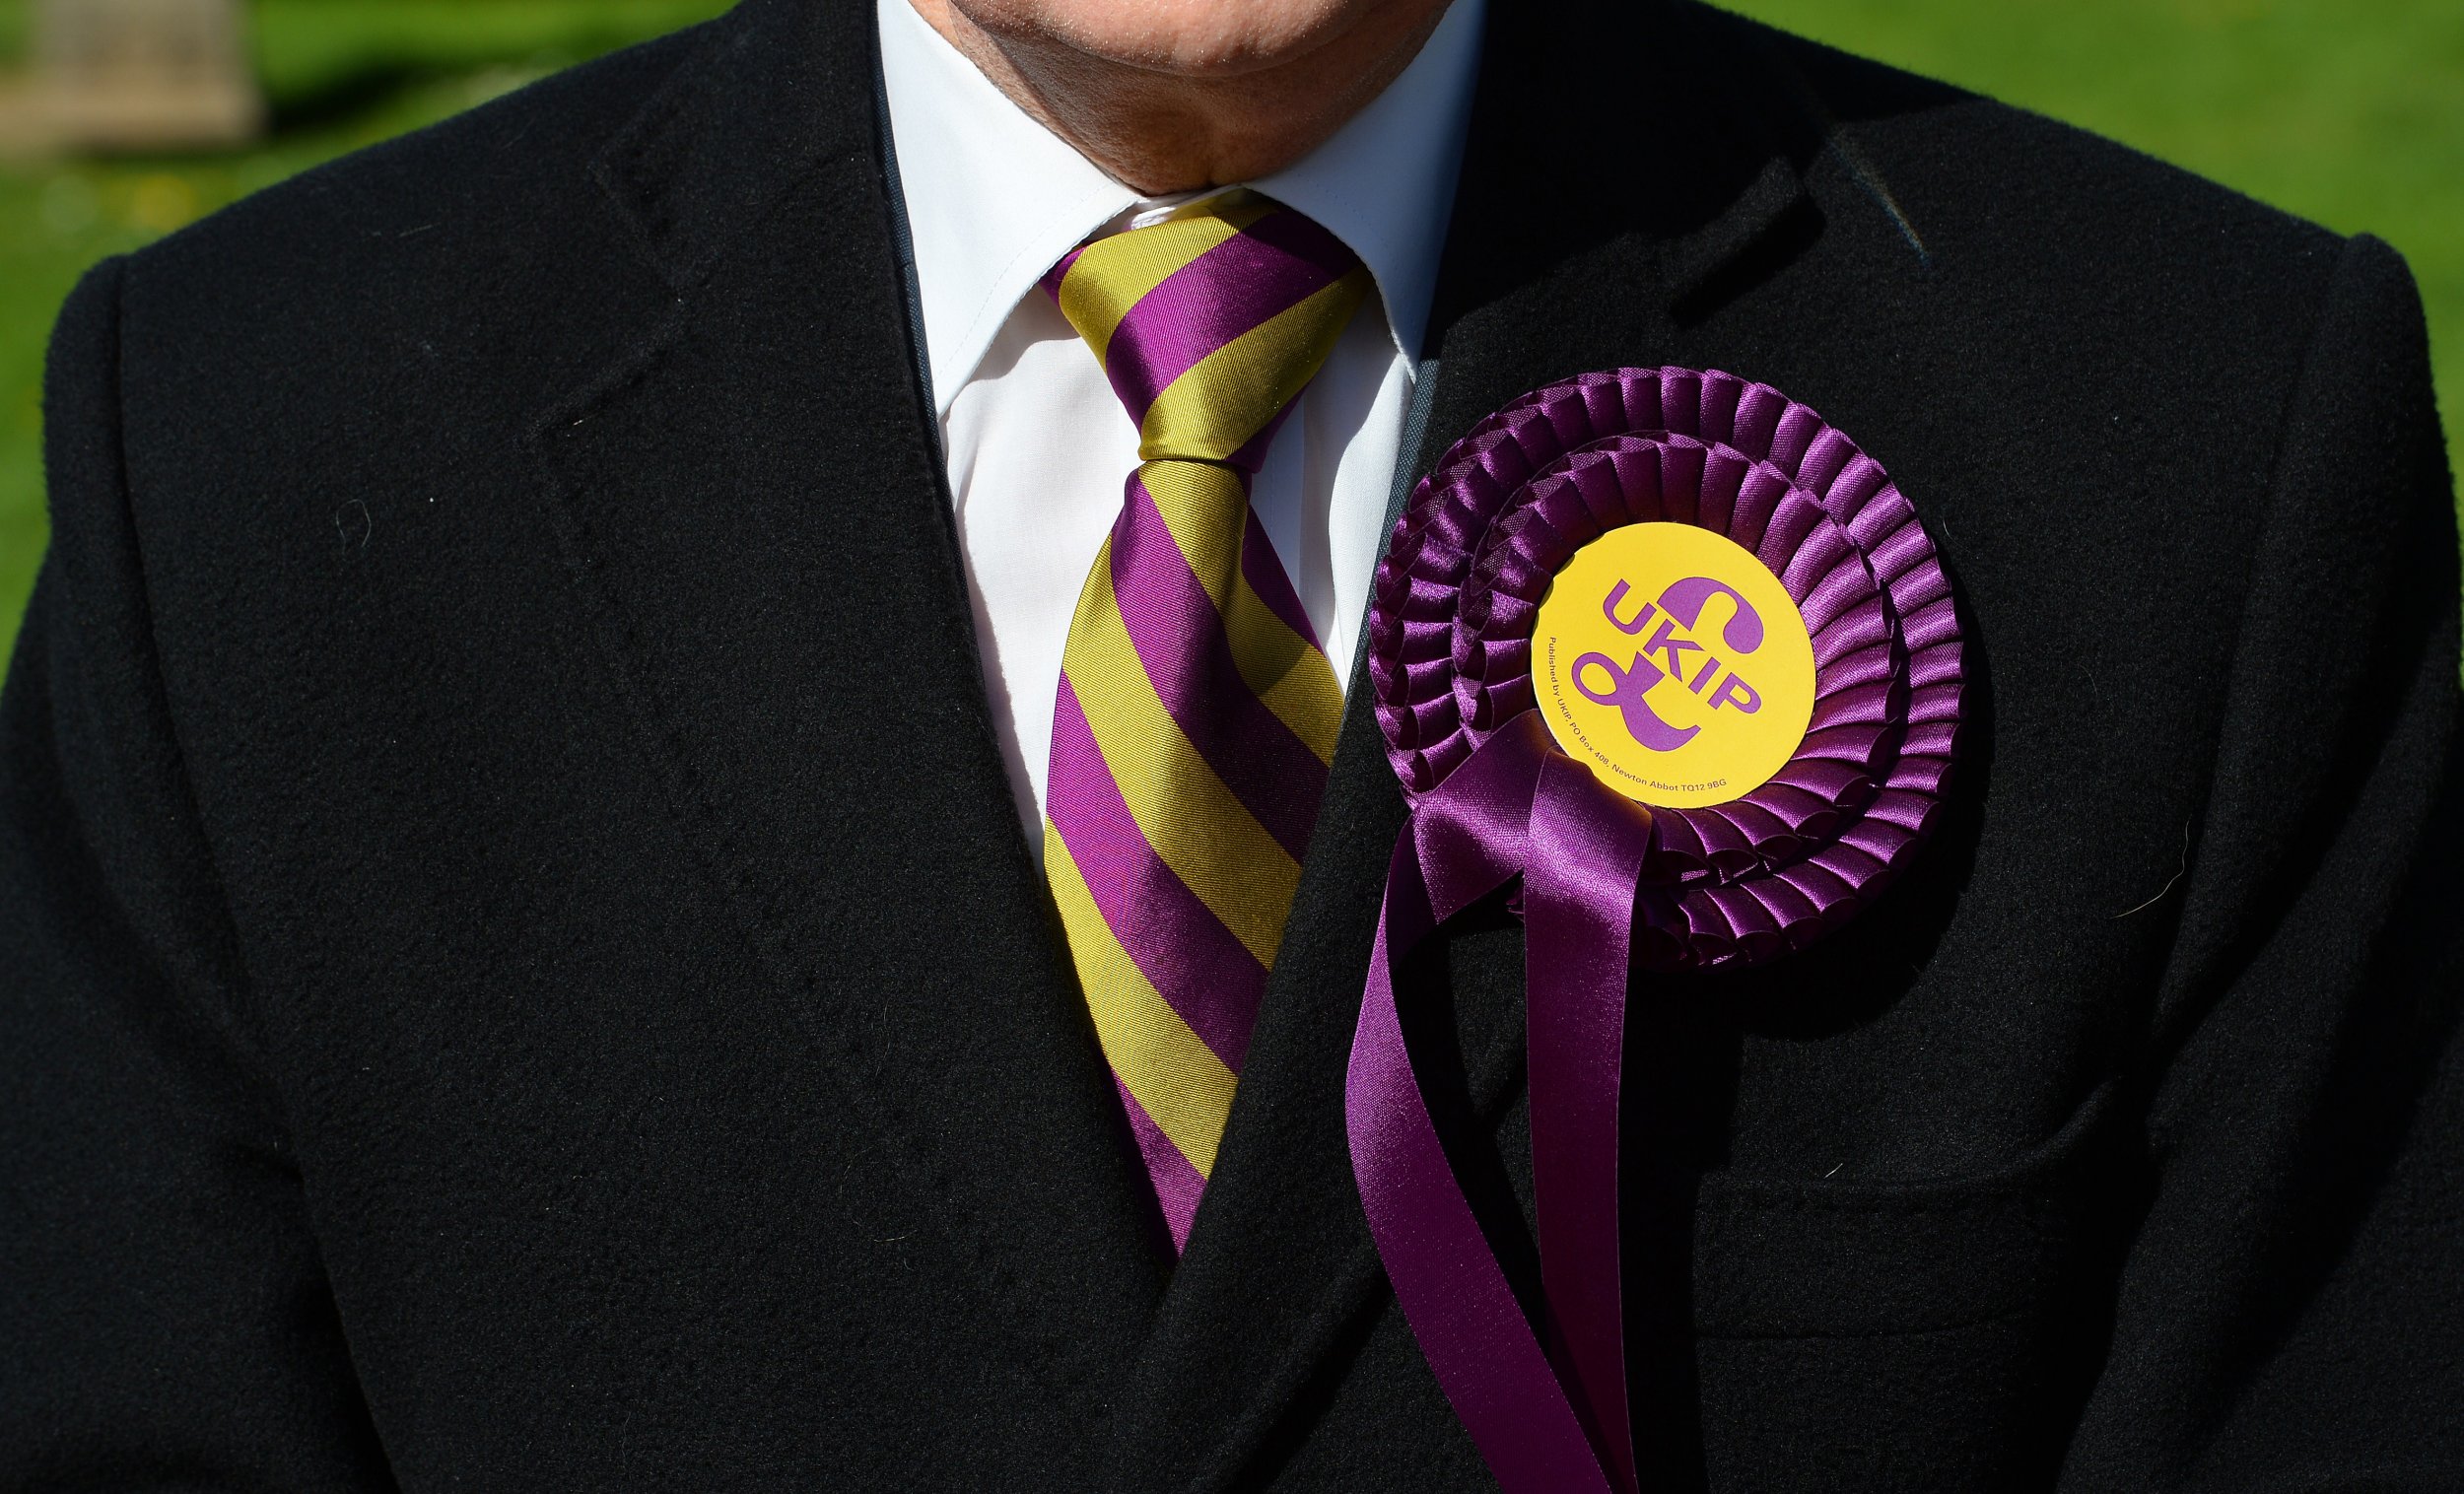 UKIP rosette